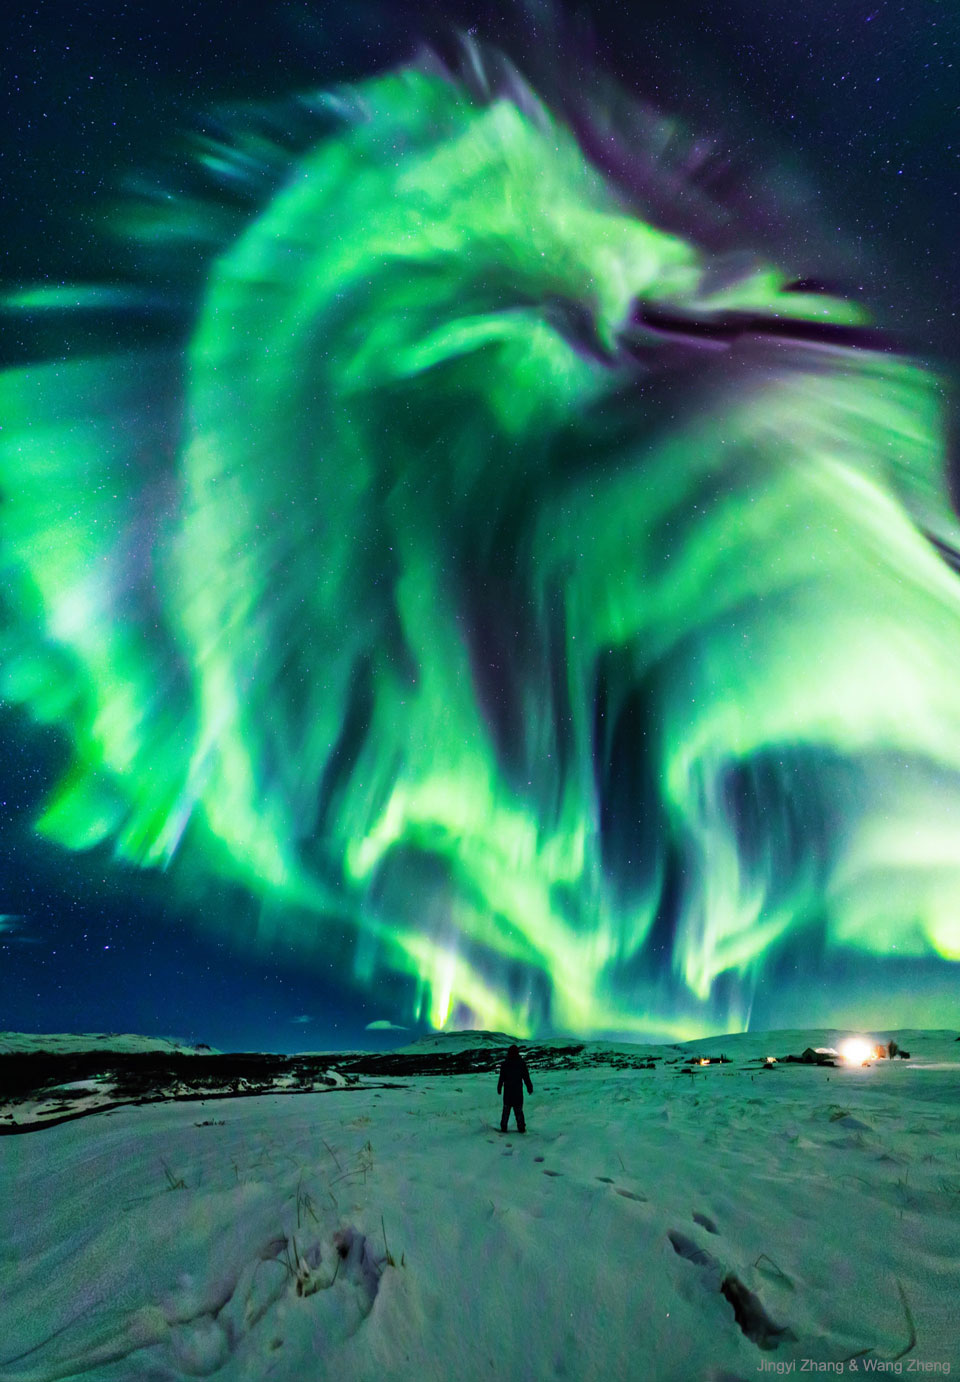 Na zdjęciu osoba stoi na śniegu i patrzy w rozgwieżdżone niebo,
na którym widoczna jest wielka zielona zorza polarna, przypominająca kształtem
smoka. Zobacz opis. Po kliknięciu obrazka załaduje się wersja
o największej dostępnej rozdzielczości.